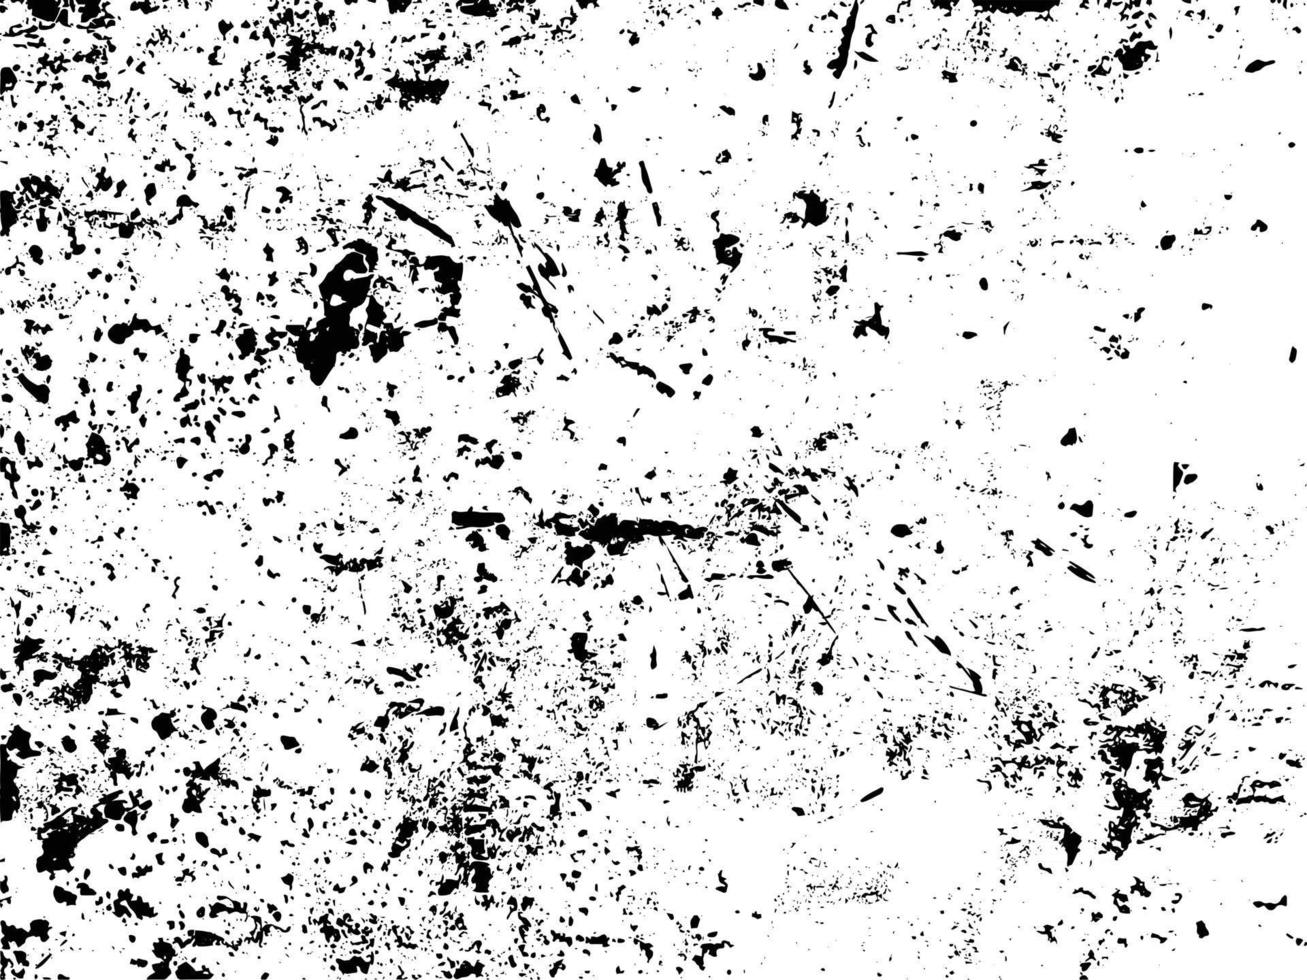 óxido y suciedad superposición de textura en blanco y negro vector